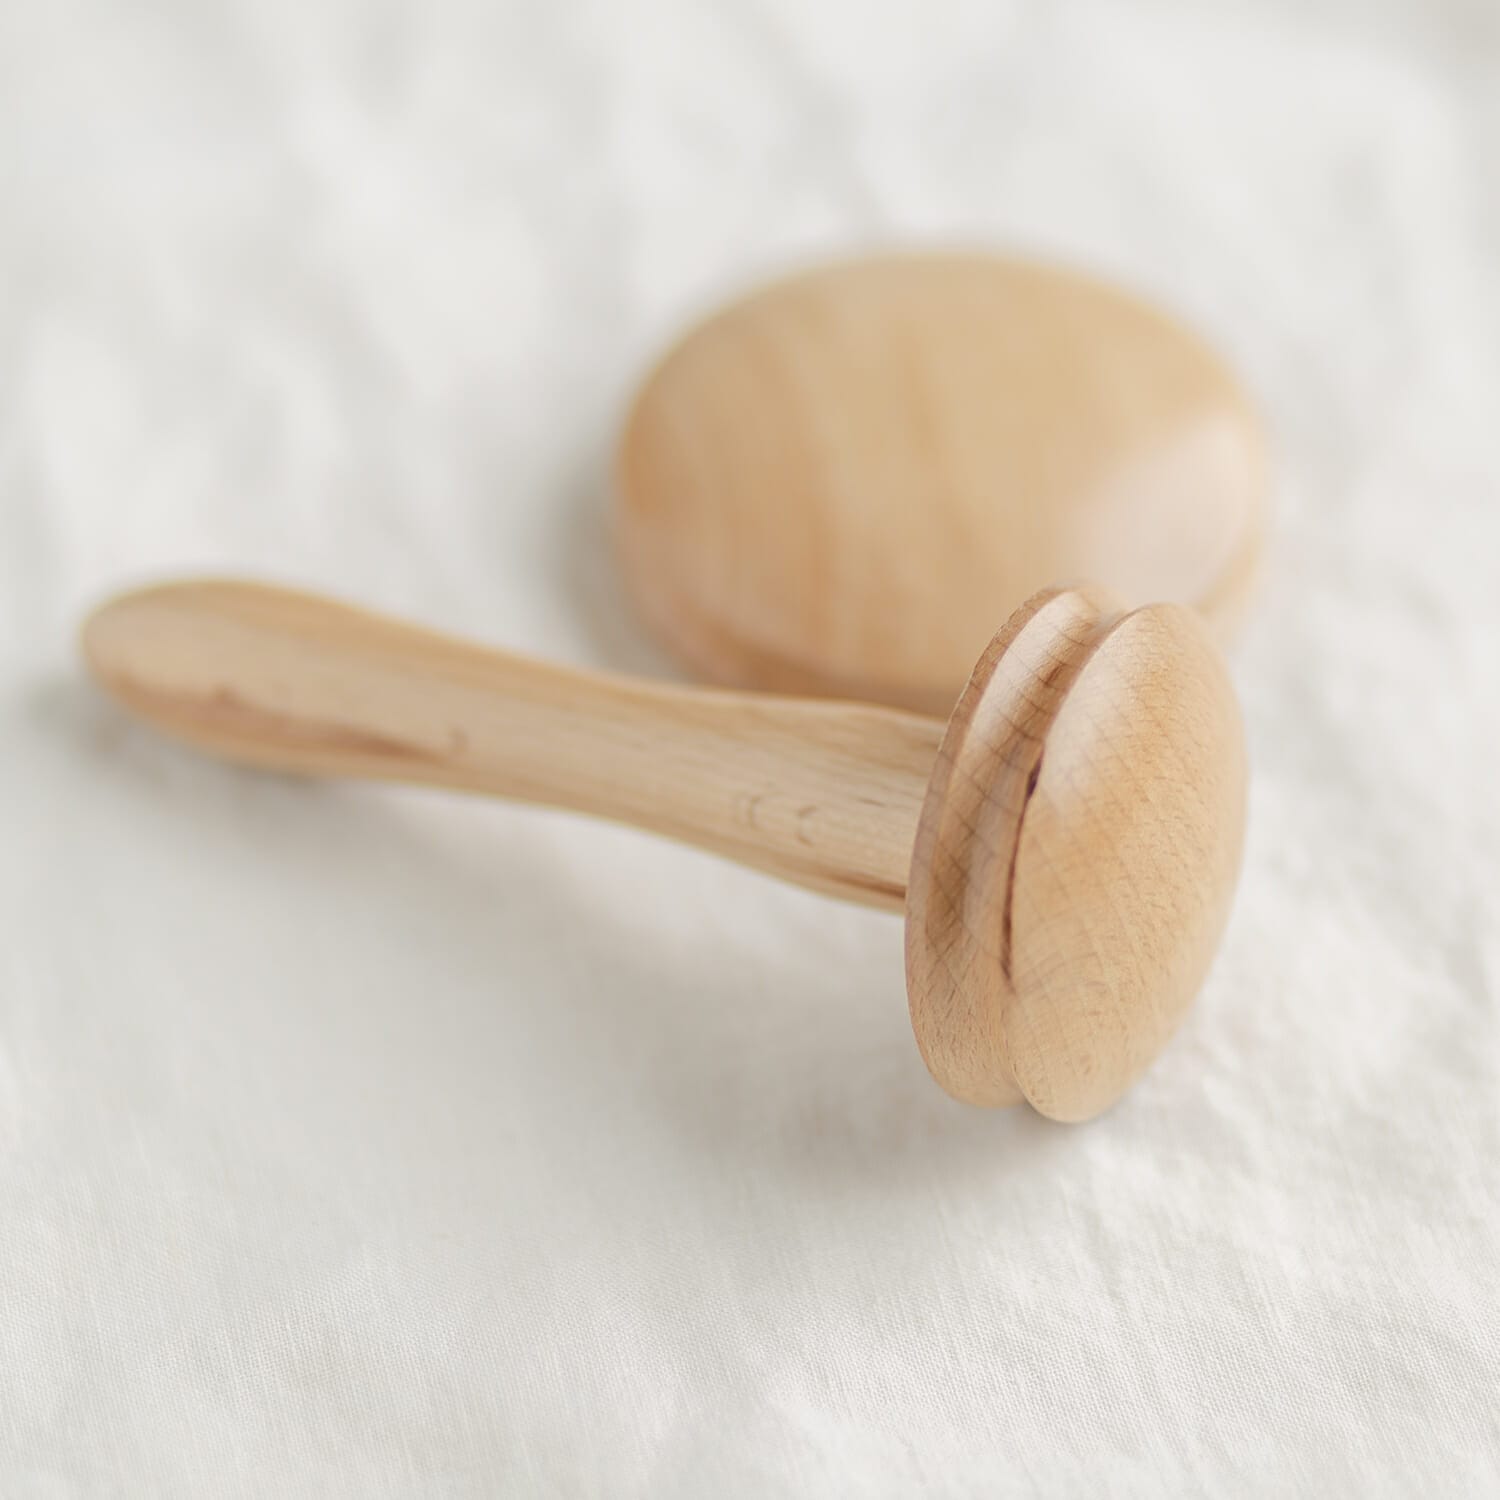 Darning Mushroom - garment repair helper tool – toolly